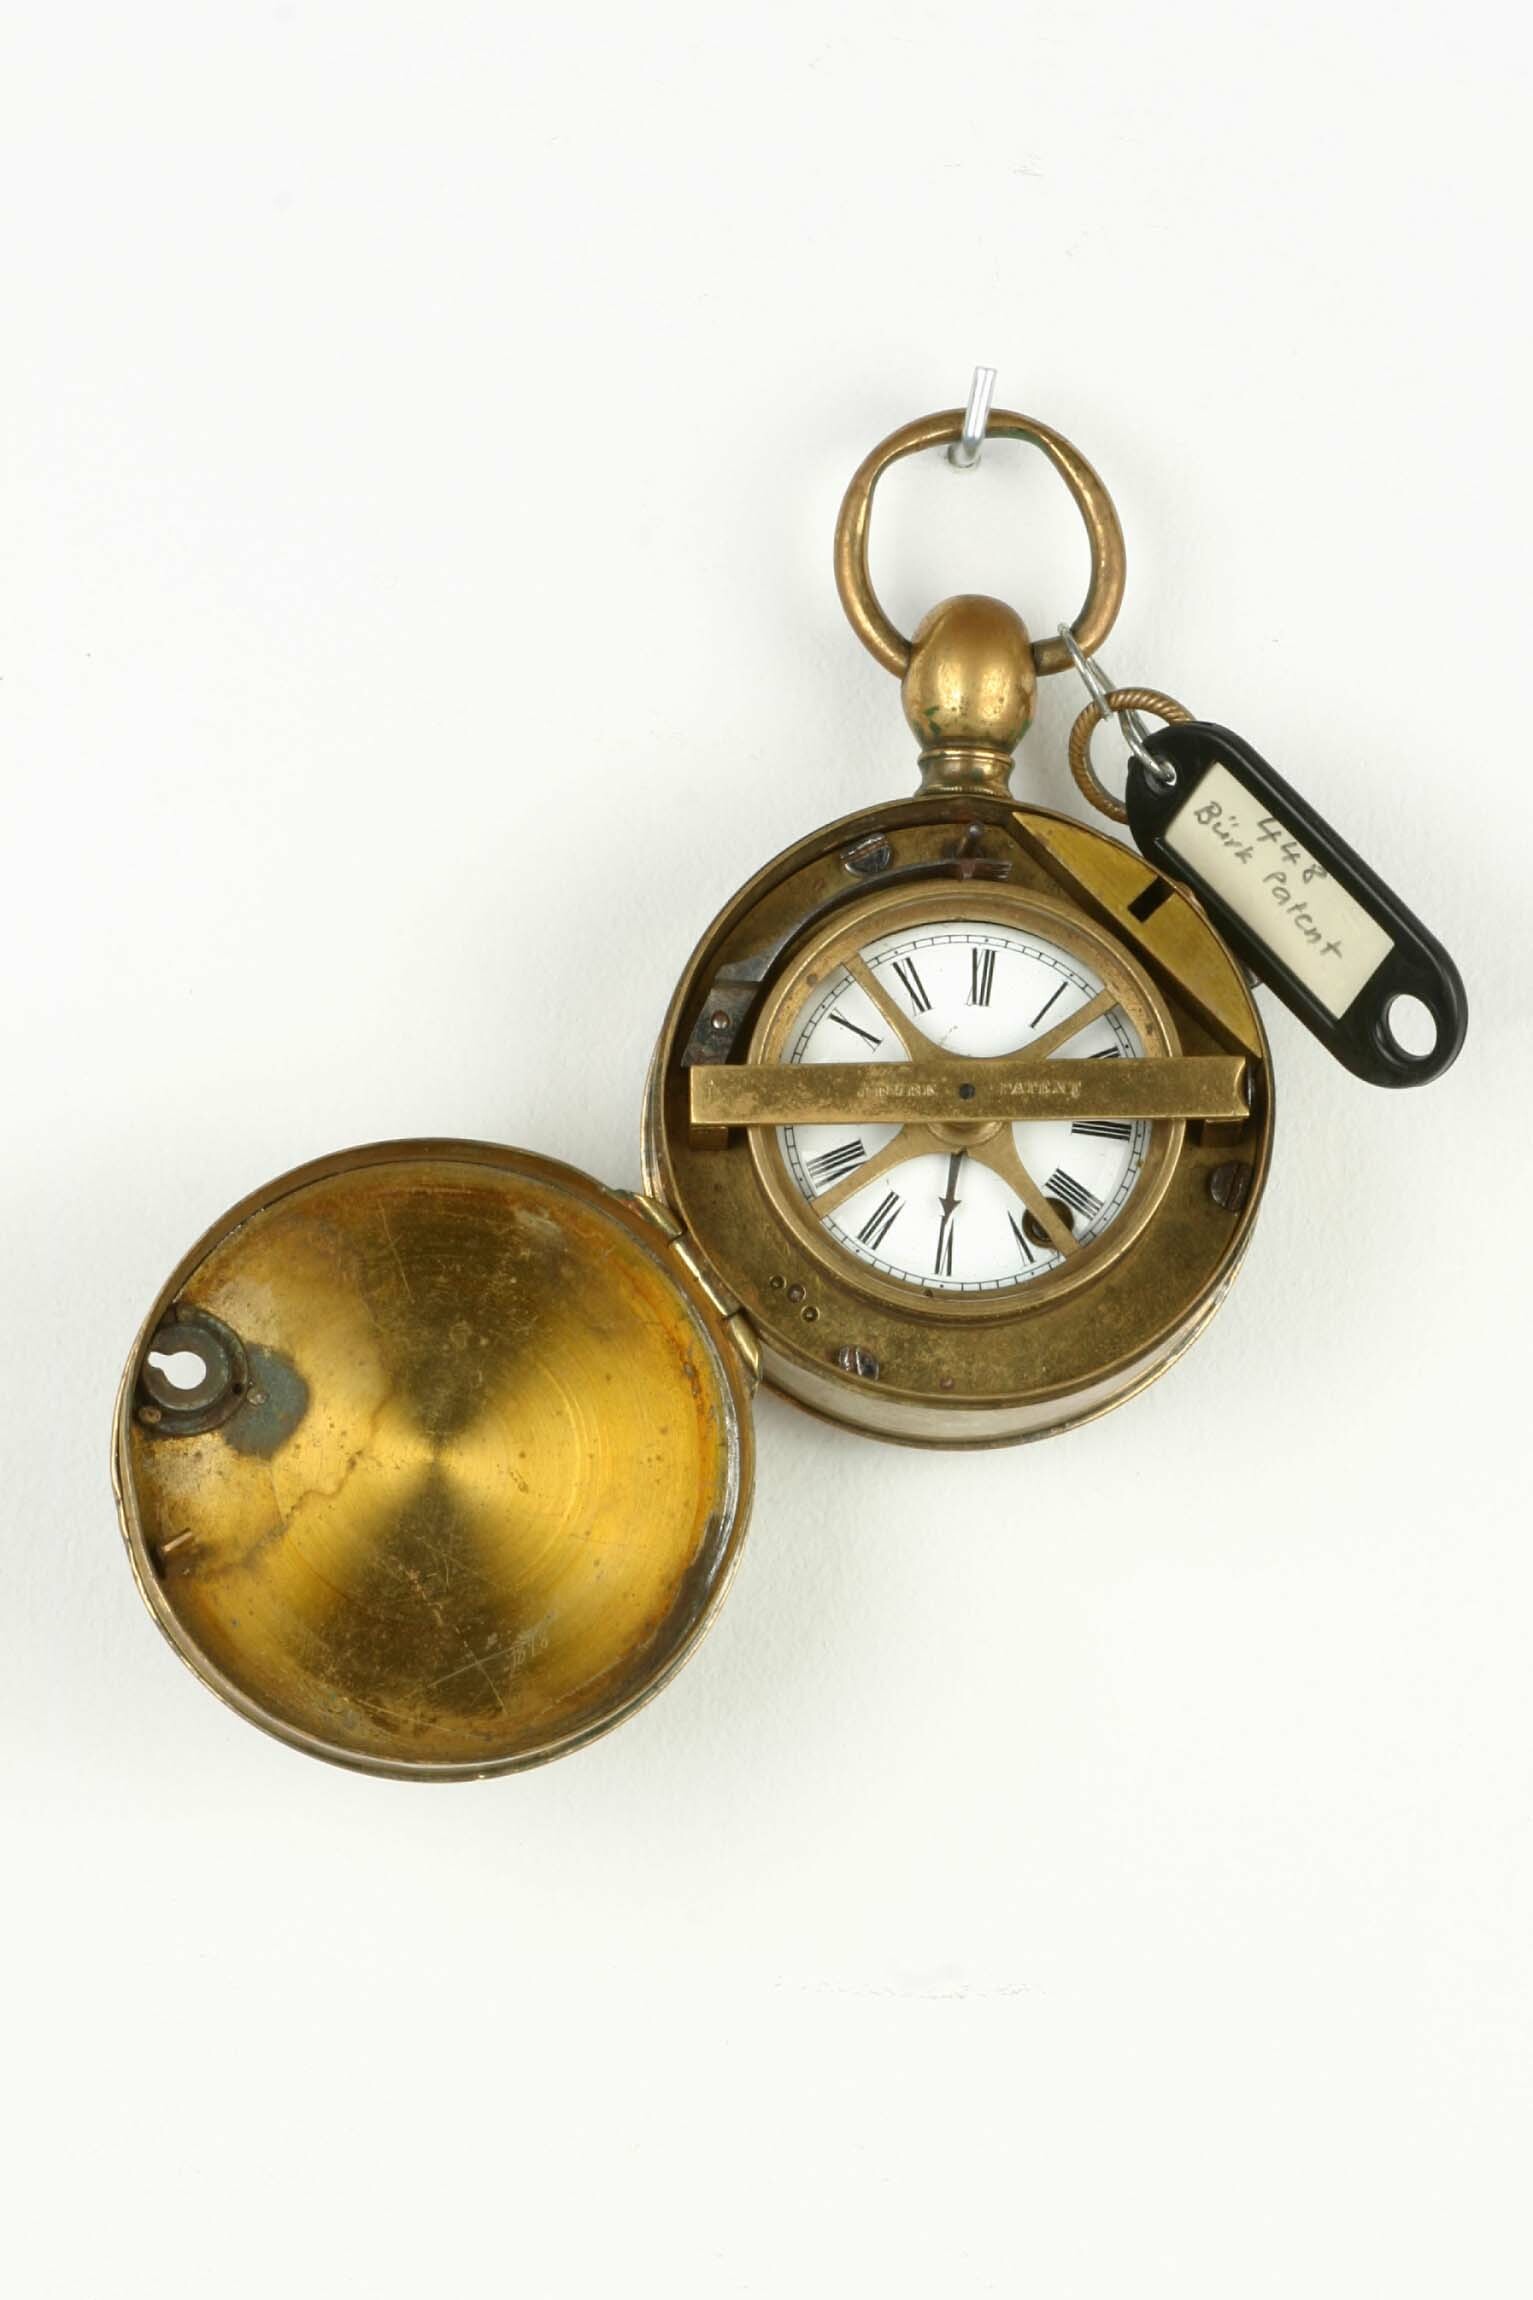 Kontrolluhr, Württembergische Uhrenfabrik, Schwenningen, um 1860 (Deutsches Uhrenmuseum CC BY-SA)